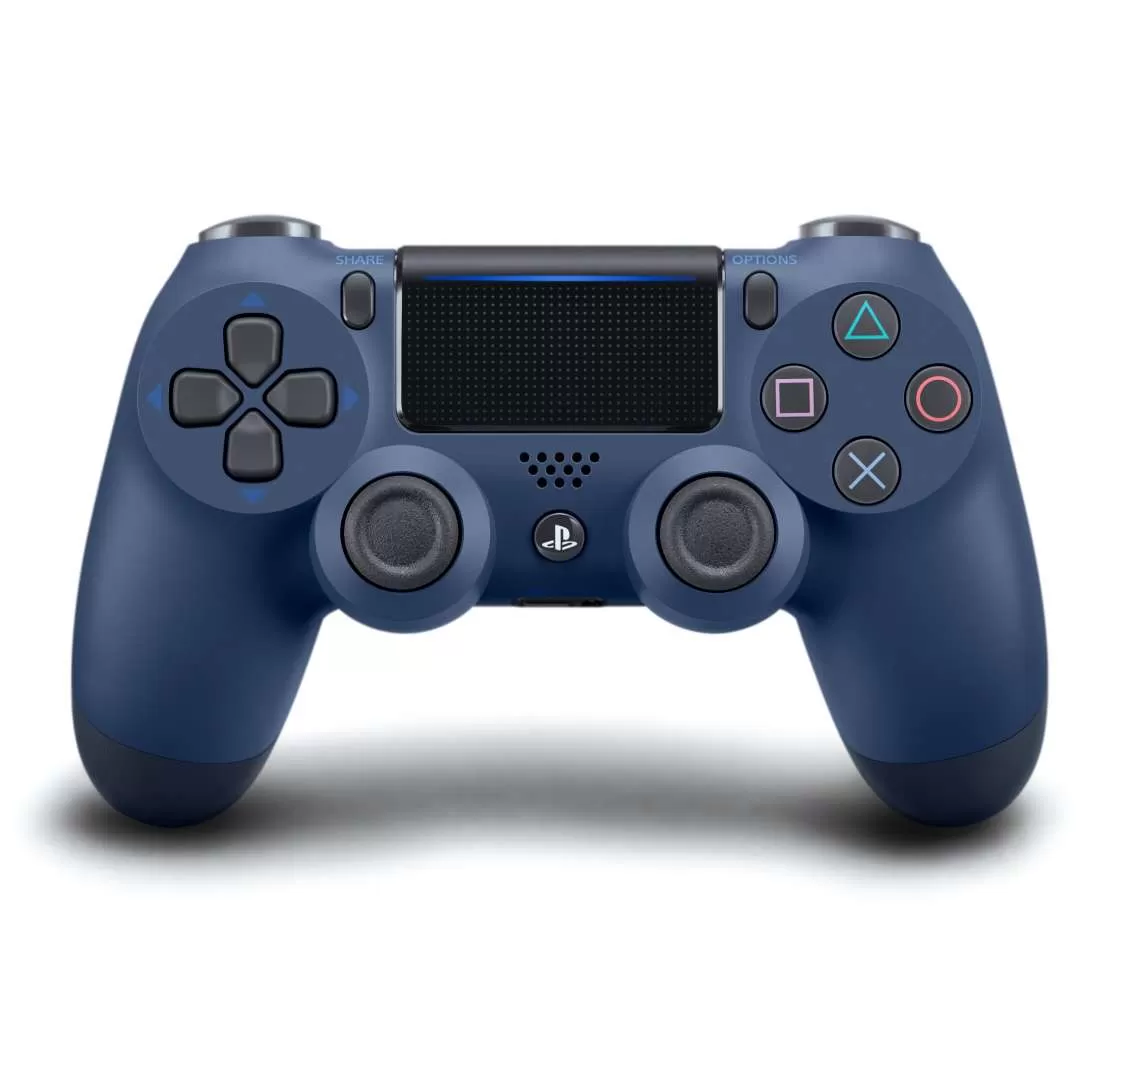 שלט אלחוטי  PS4 DualShock 4 Wireless Controller כחול מיד נייט